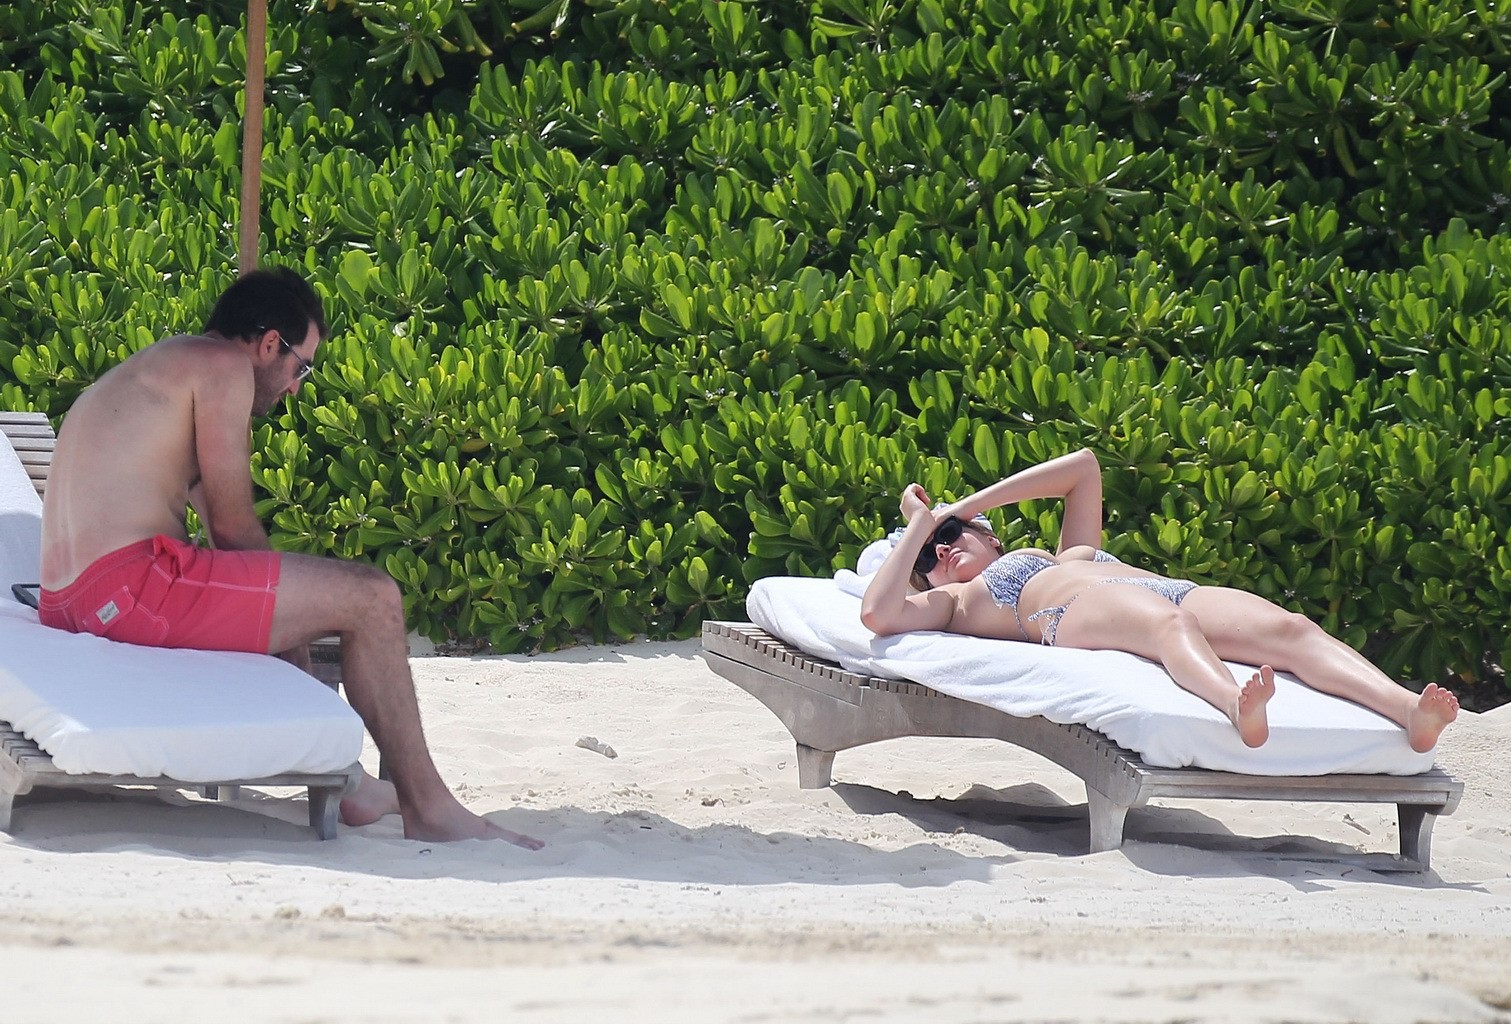 Kate upton bräunt ihre milchigen Melonen und Arsch im silbernen Bikini am Strand in mex
 #75190867